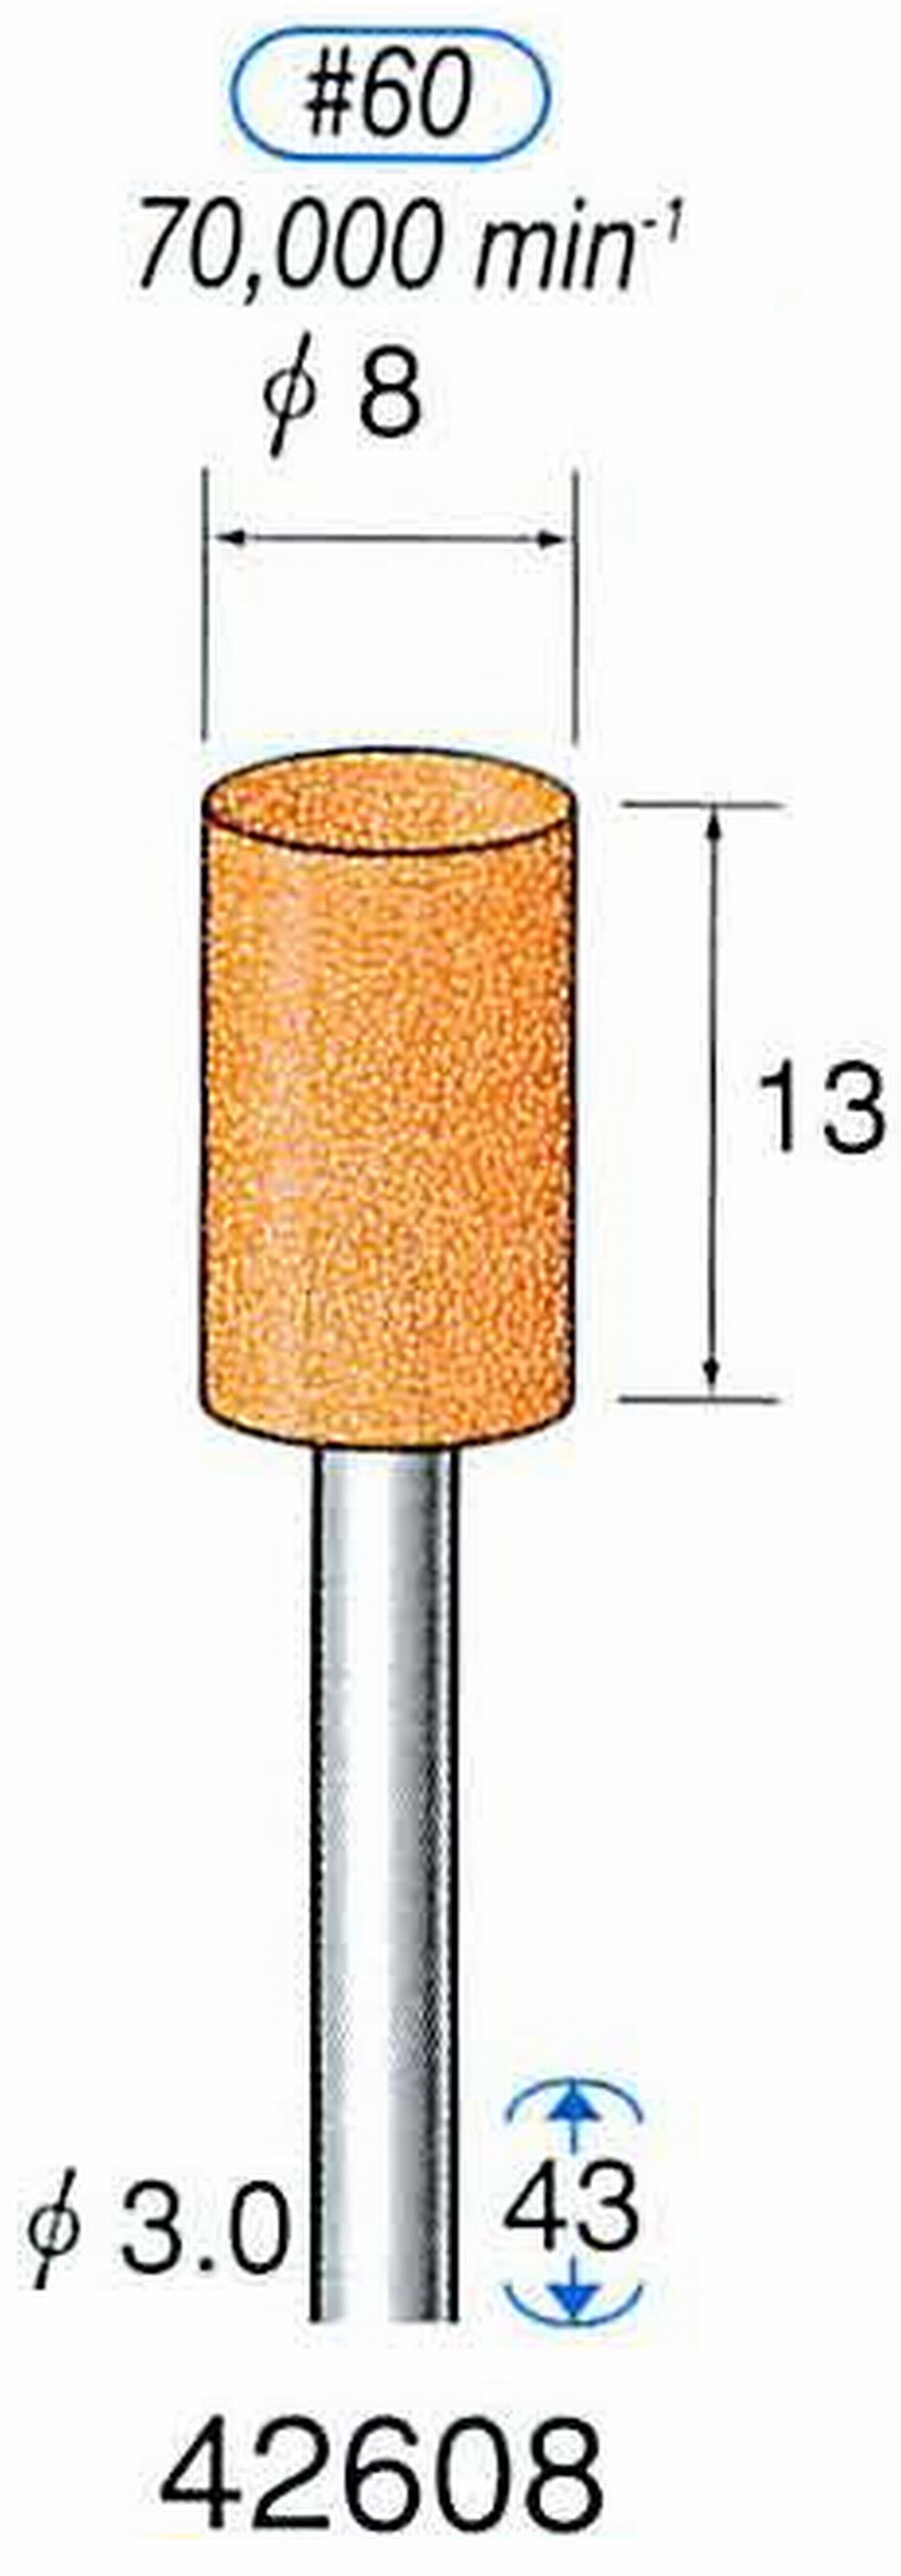 ナカニシ/NAKANISHI 軸付砥石(WA砥粒) 一般研削用 軸径(シャンク) φ3.0mm 42608